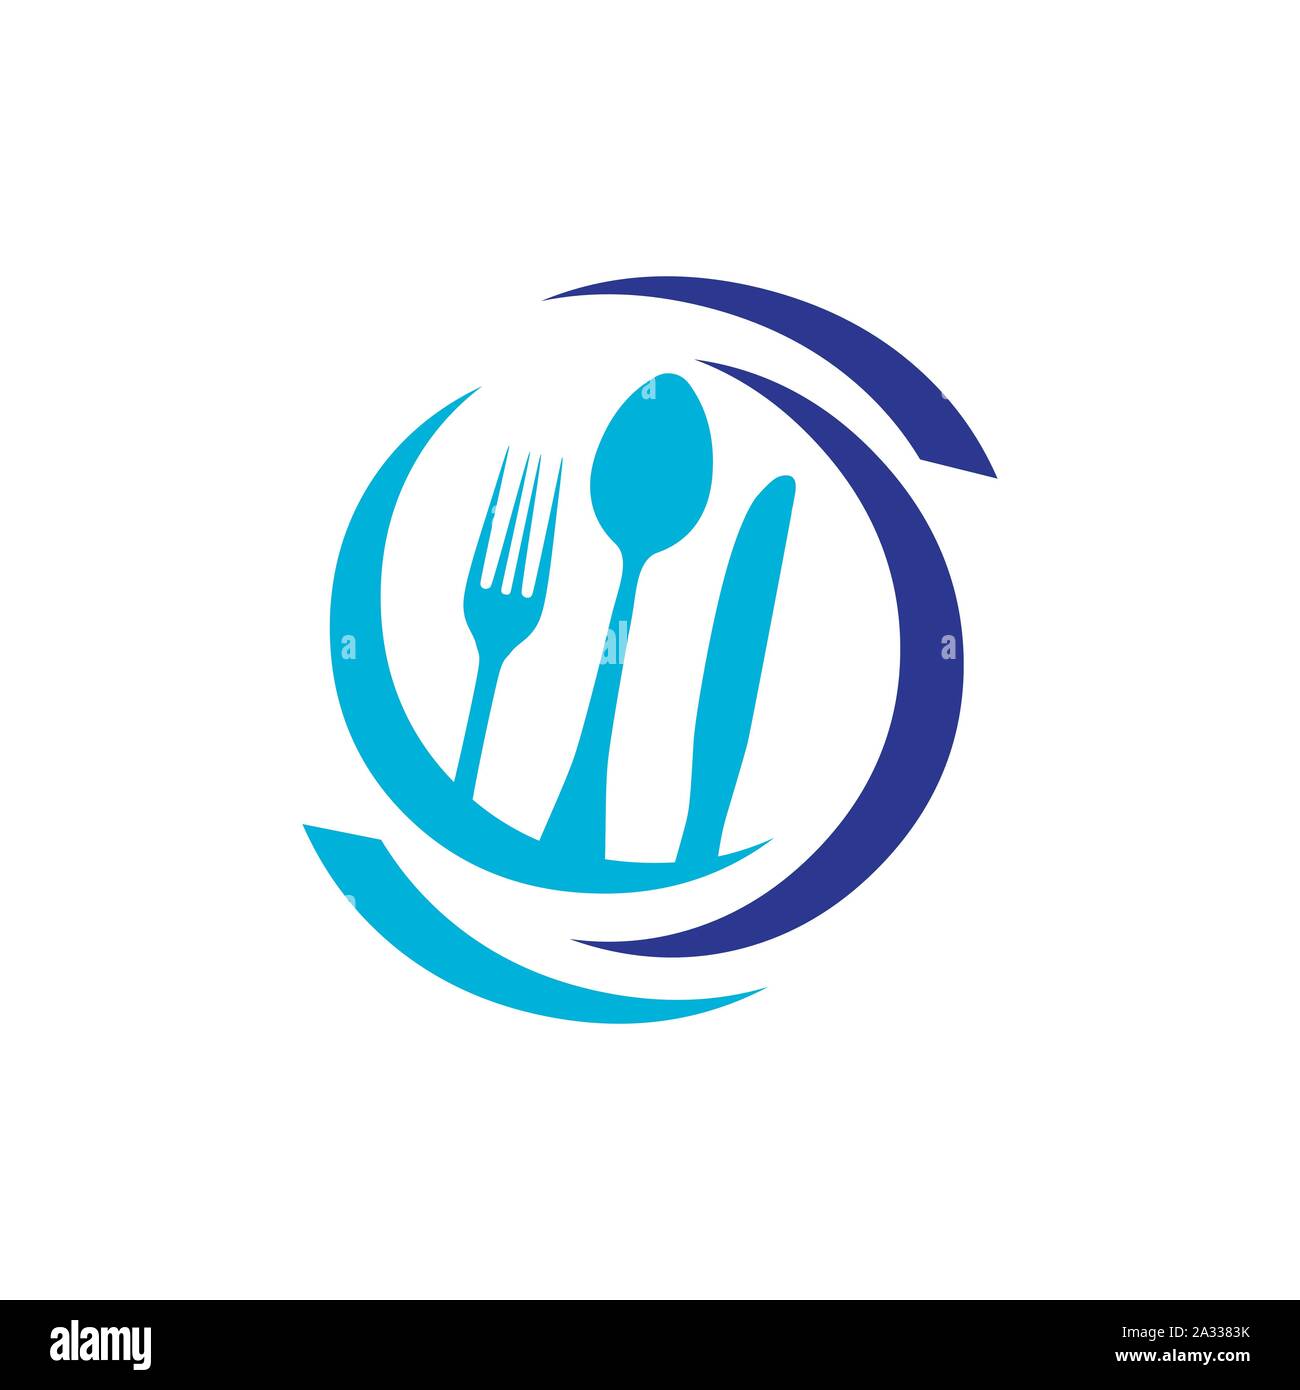 Löffel und Gabel logo Vector Illustration für Cafe oder Restaurant ein grafisches Symbol für Essen kochen Business Stock Vektor